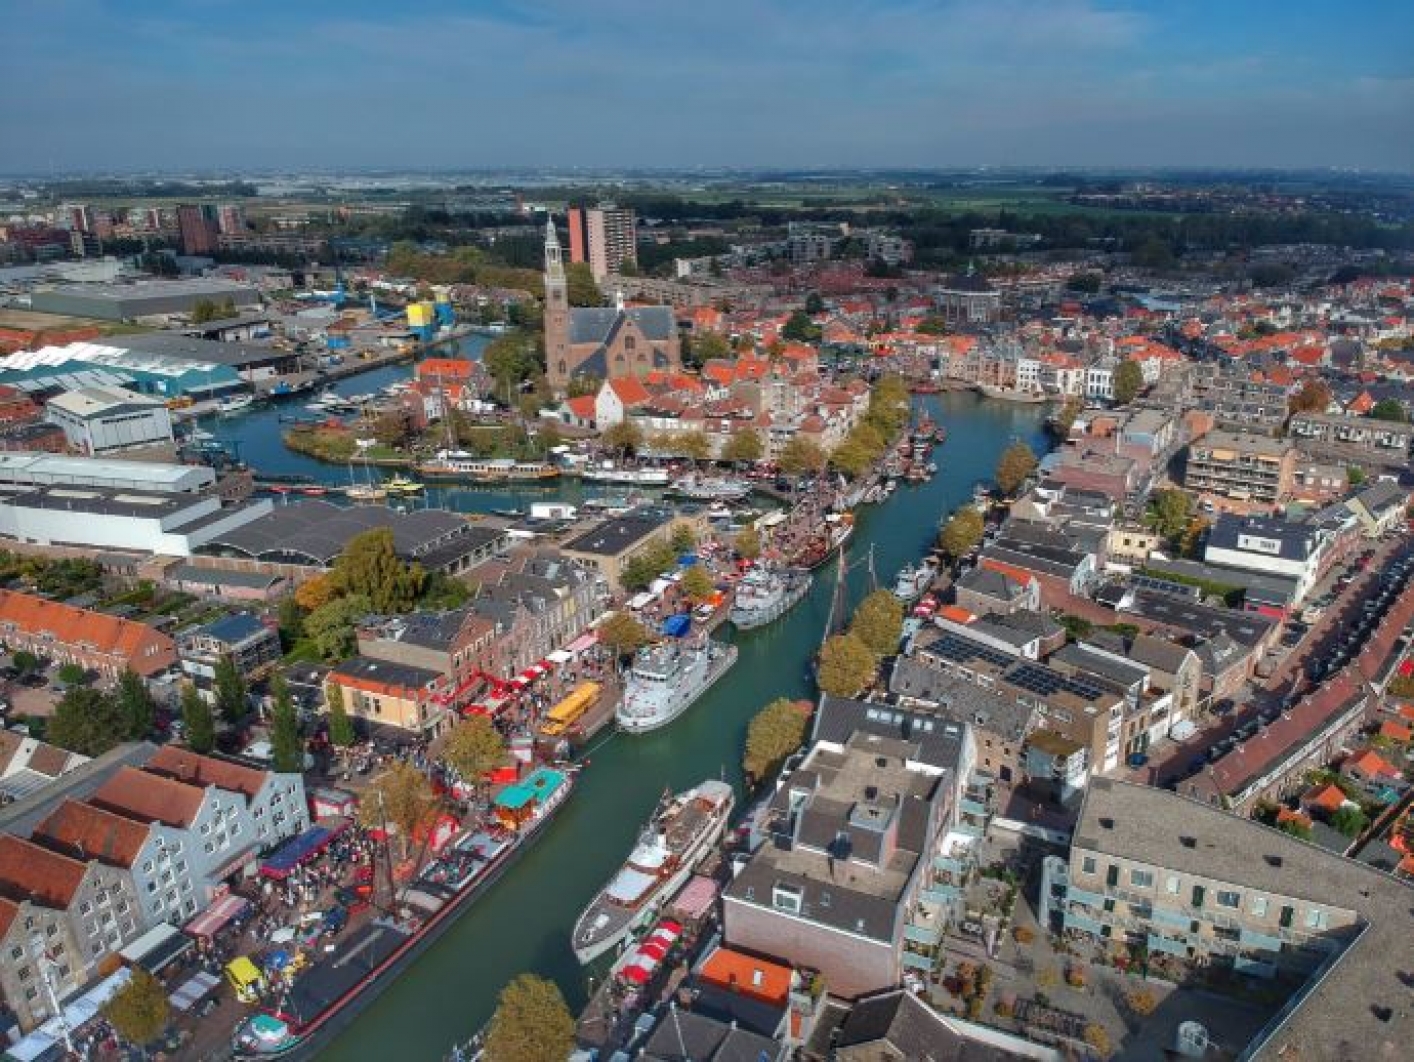 luchtfoto van stad met huizen, industrie, kerk, haven en kanaal